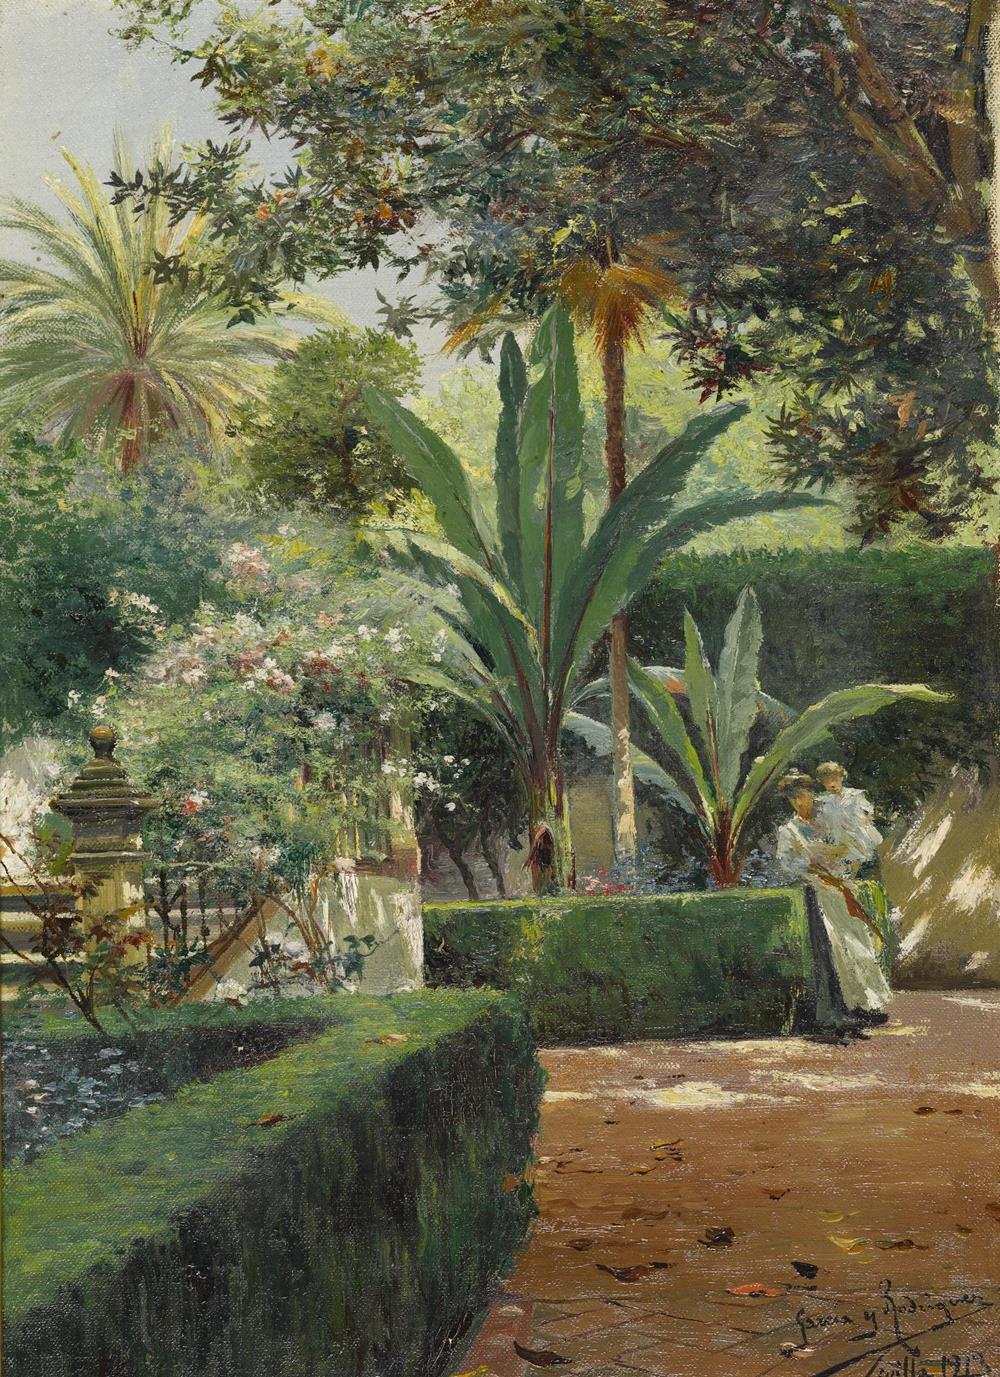 Manuel García Rodríguez patios jardines